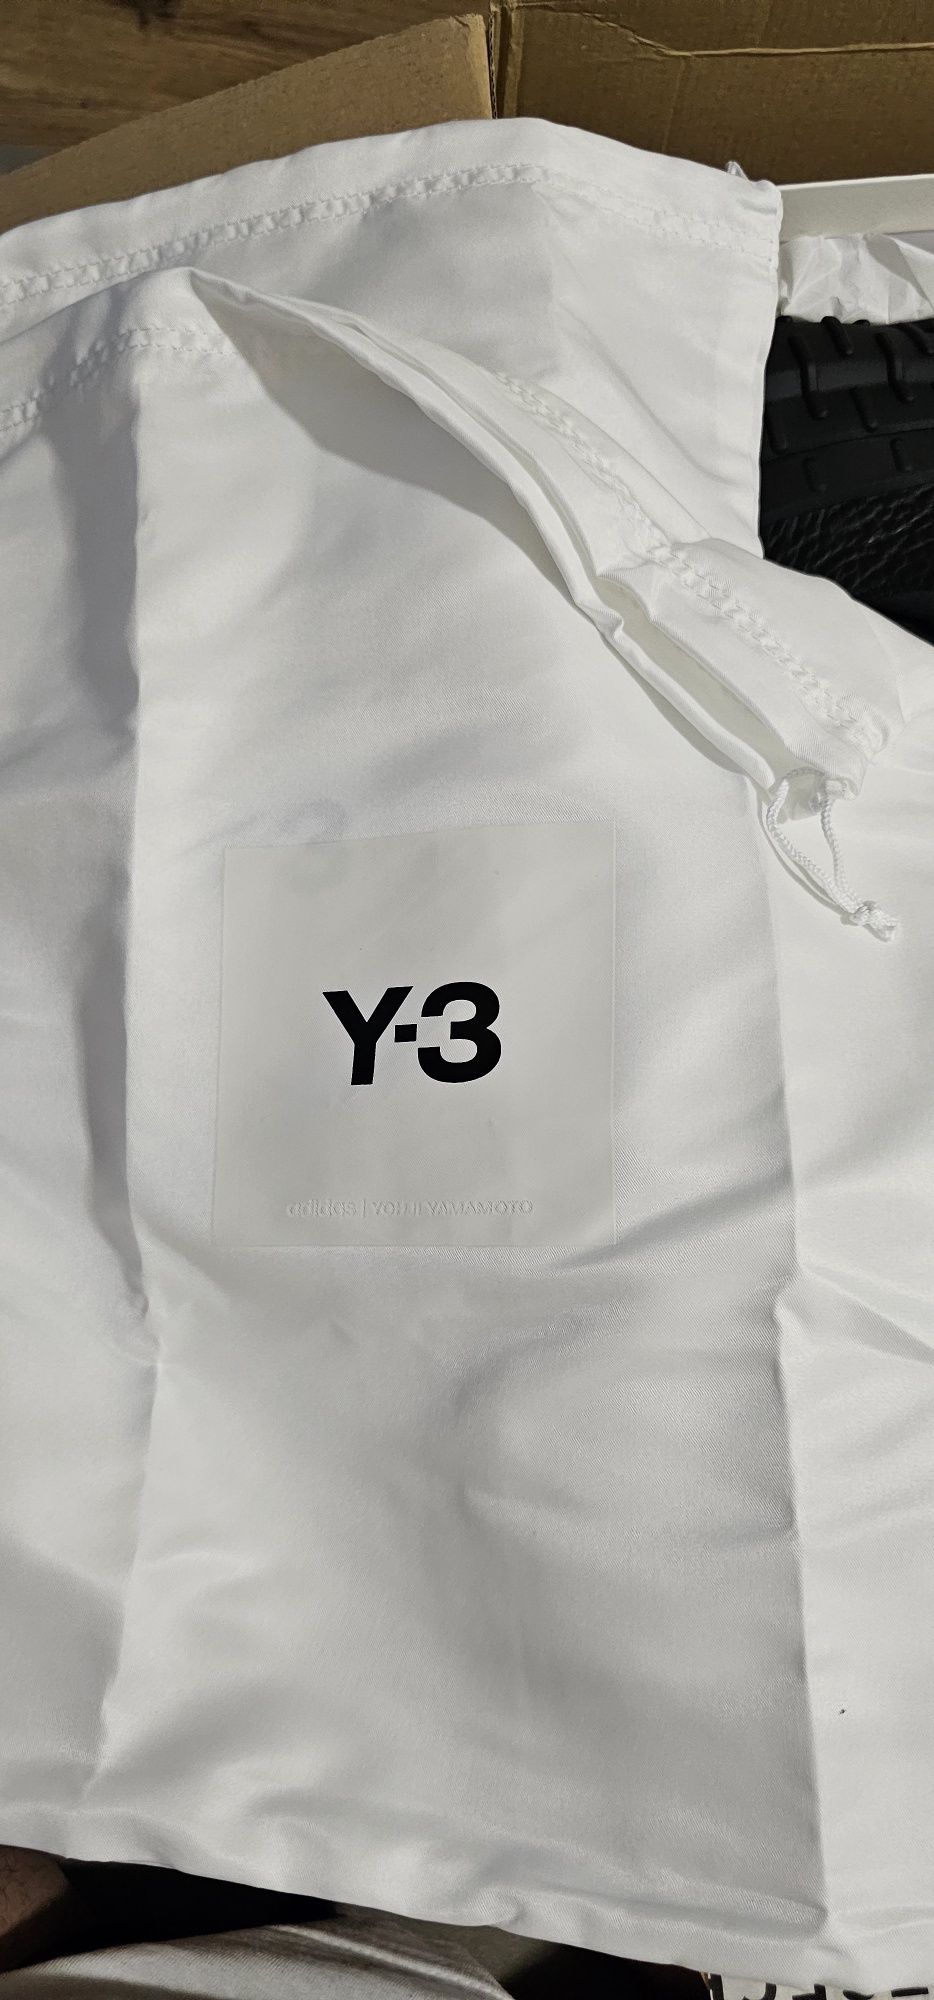 Adidas Y3 Yohji Yamamoto